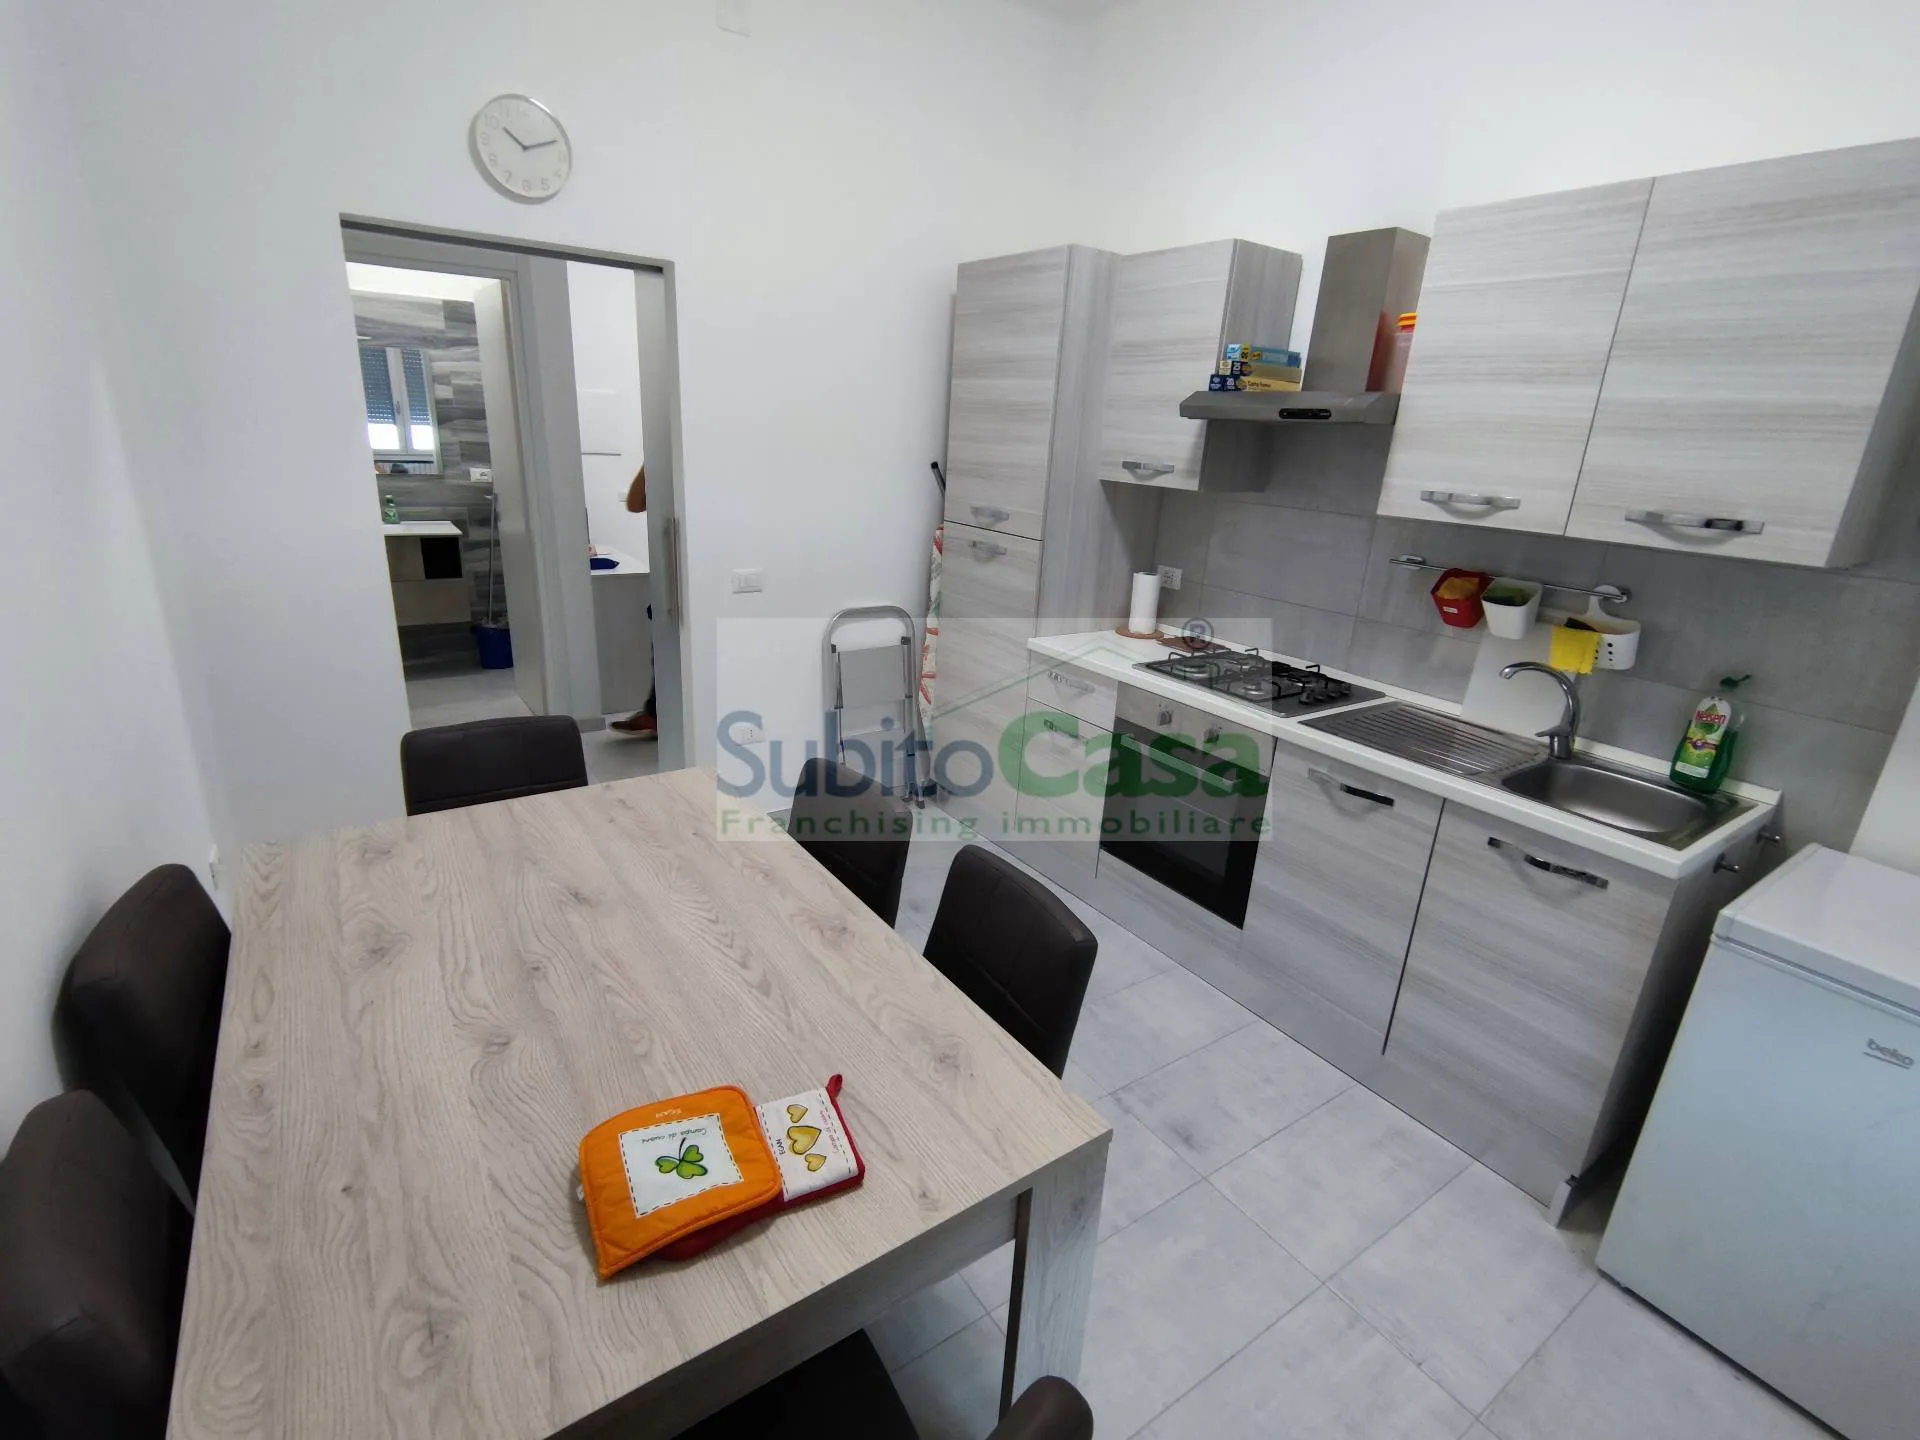 Immagine per Appartamento in affitto a Chieti Via De Virgiliis